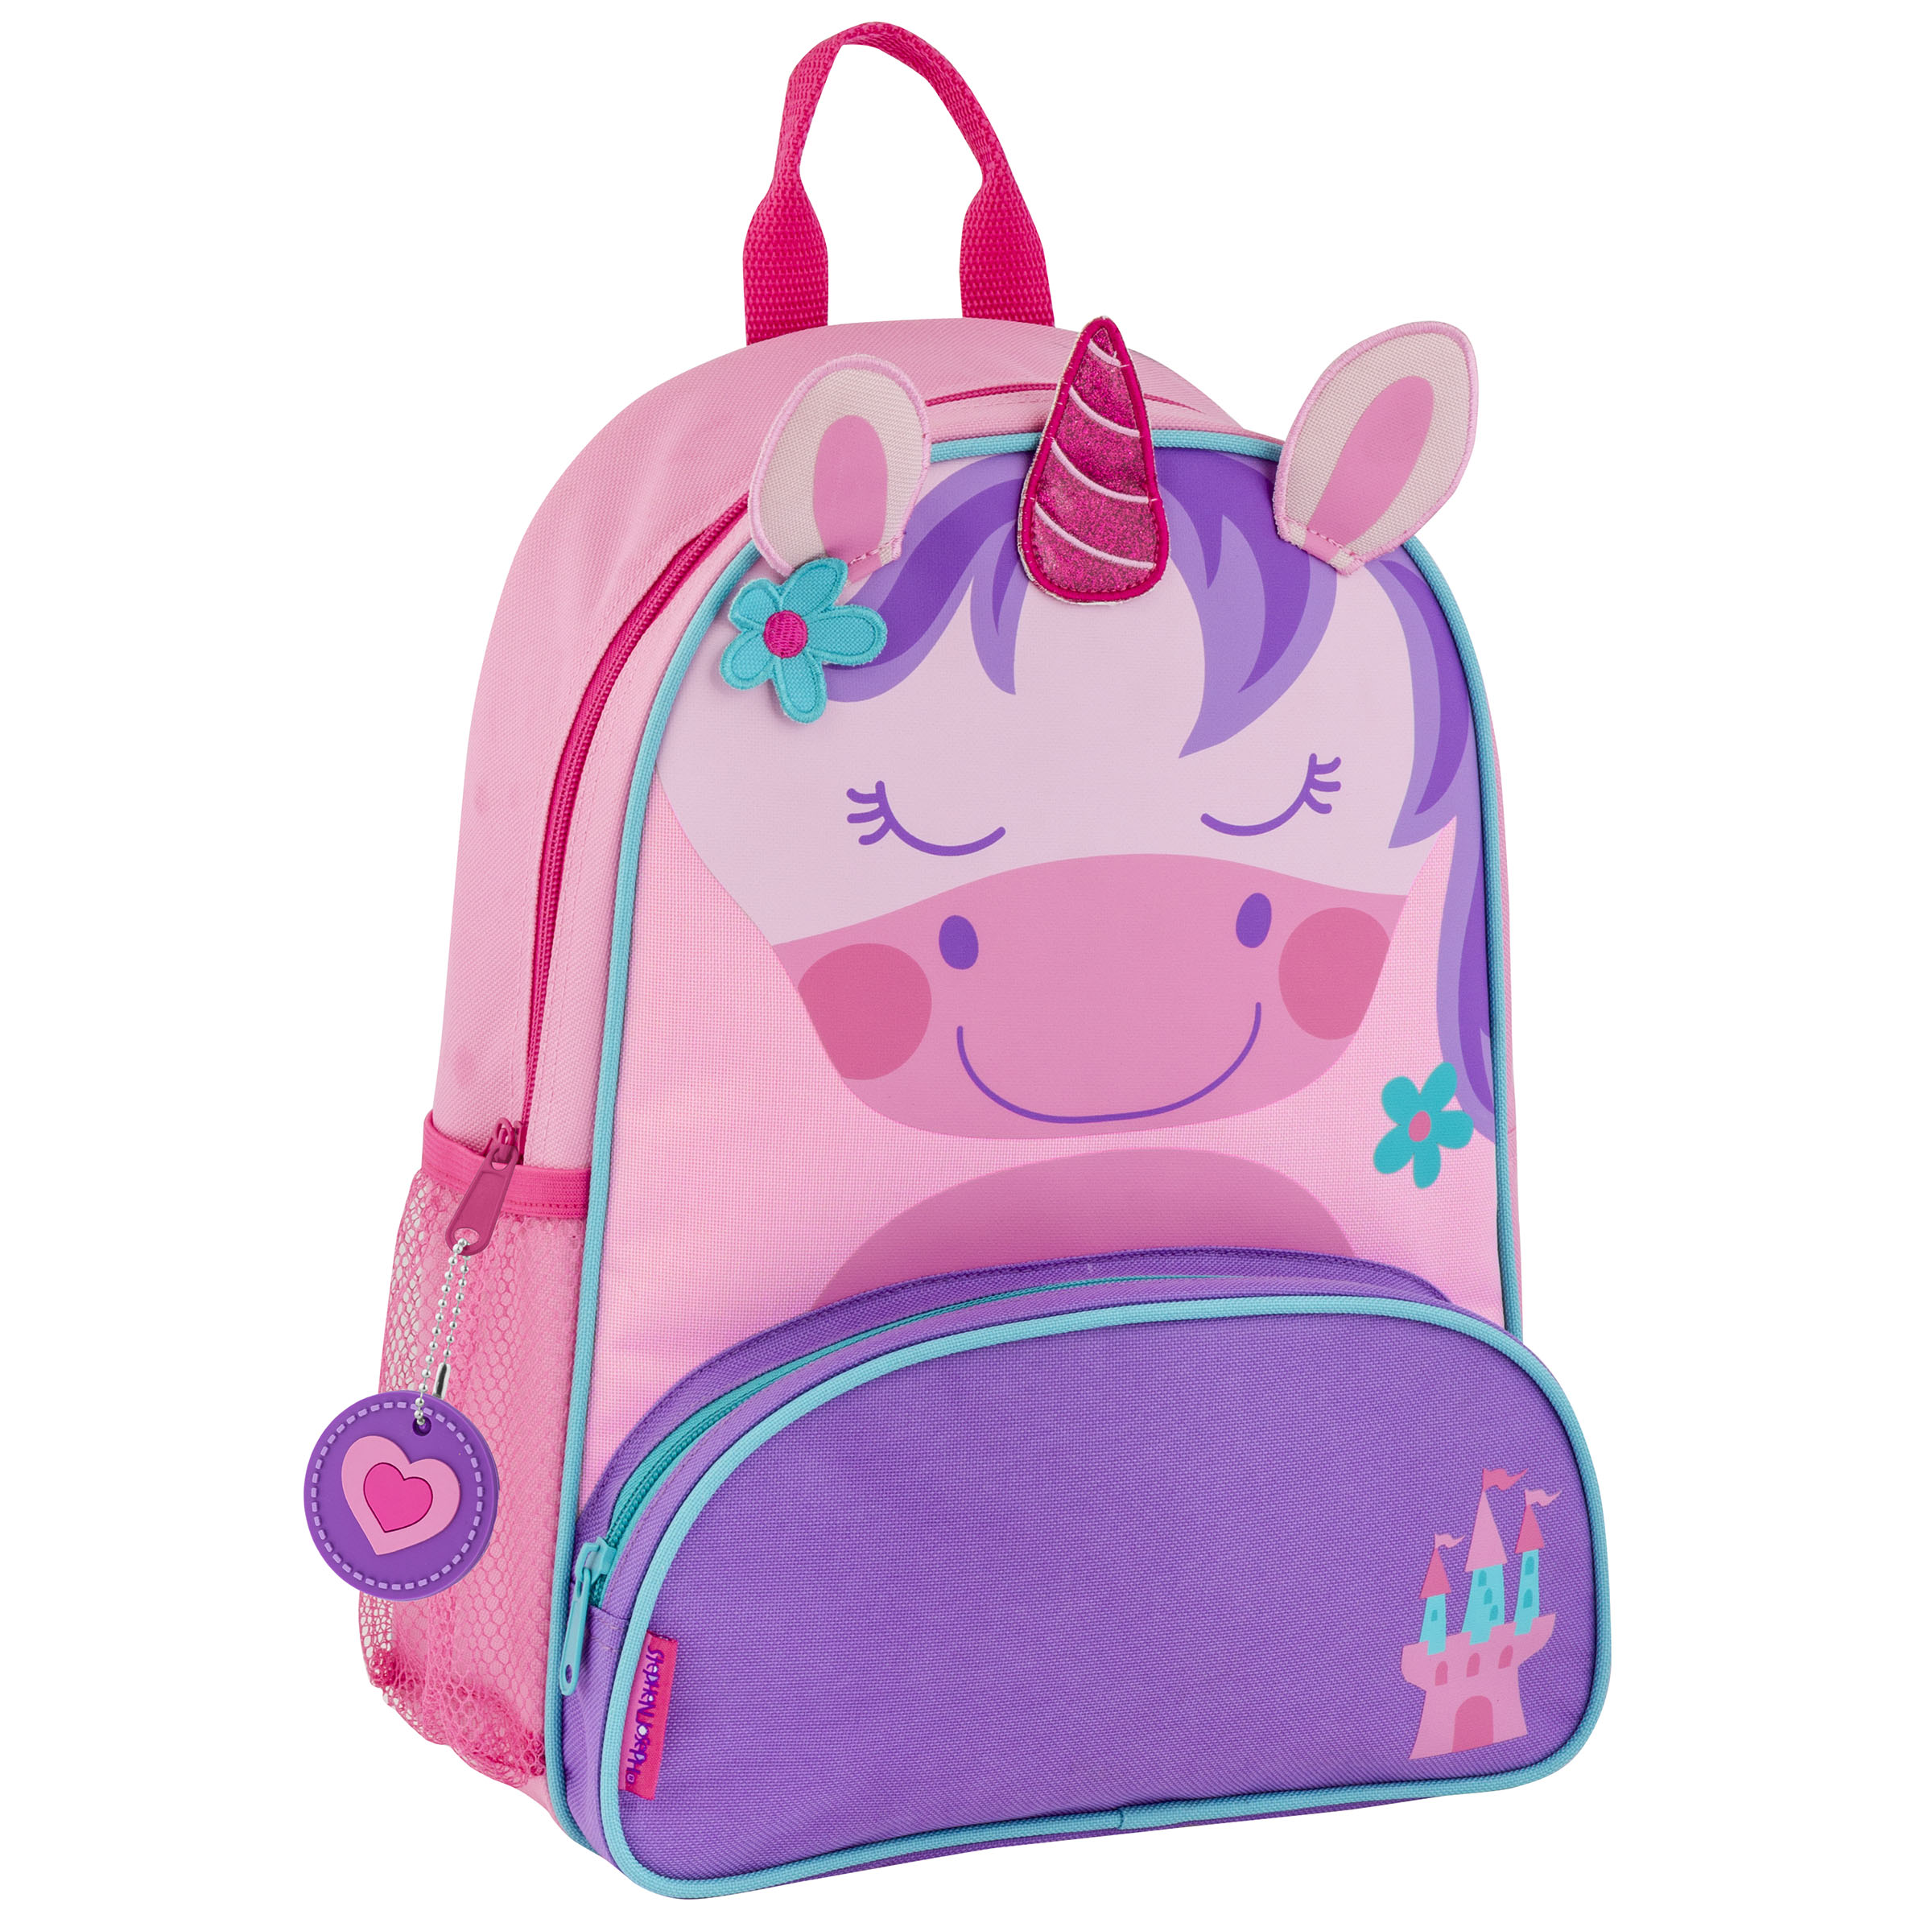 Stephen Joseph Sidekick Unicorn Backpack for Girls